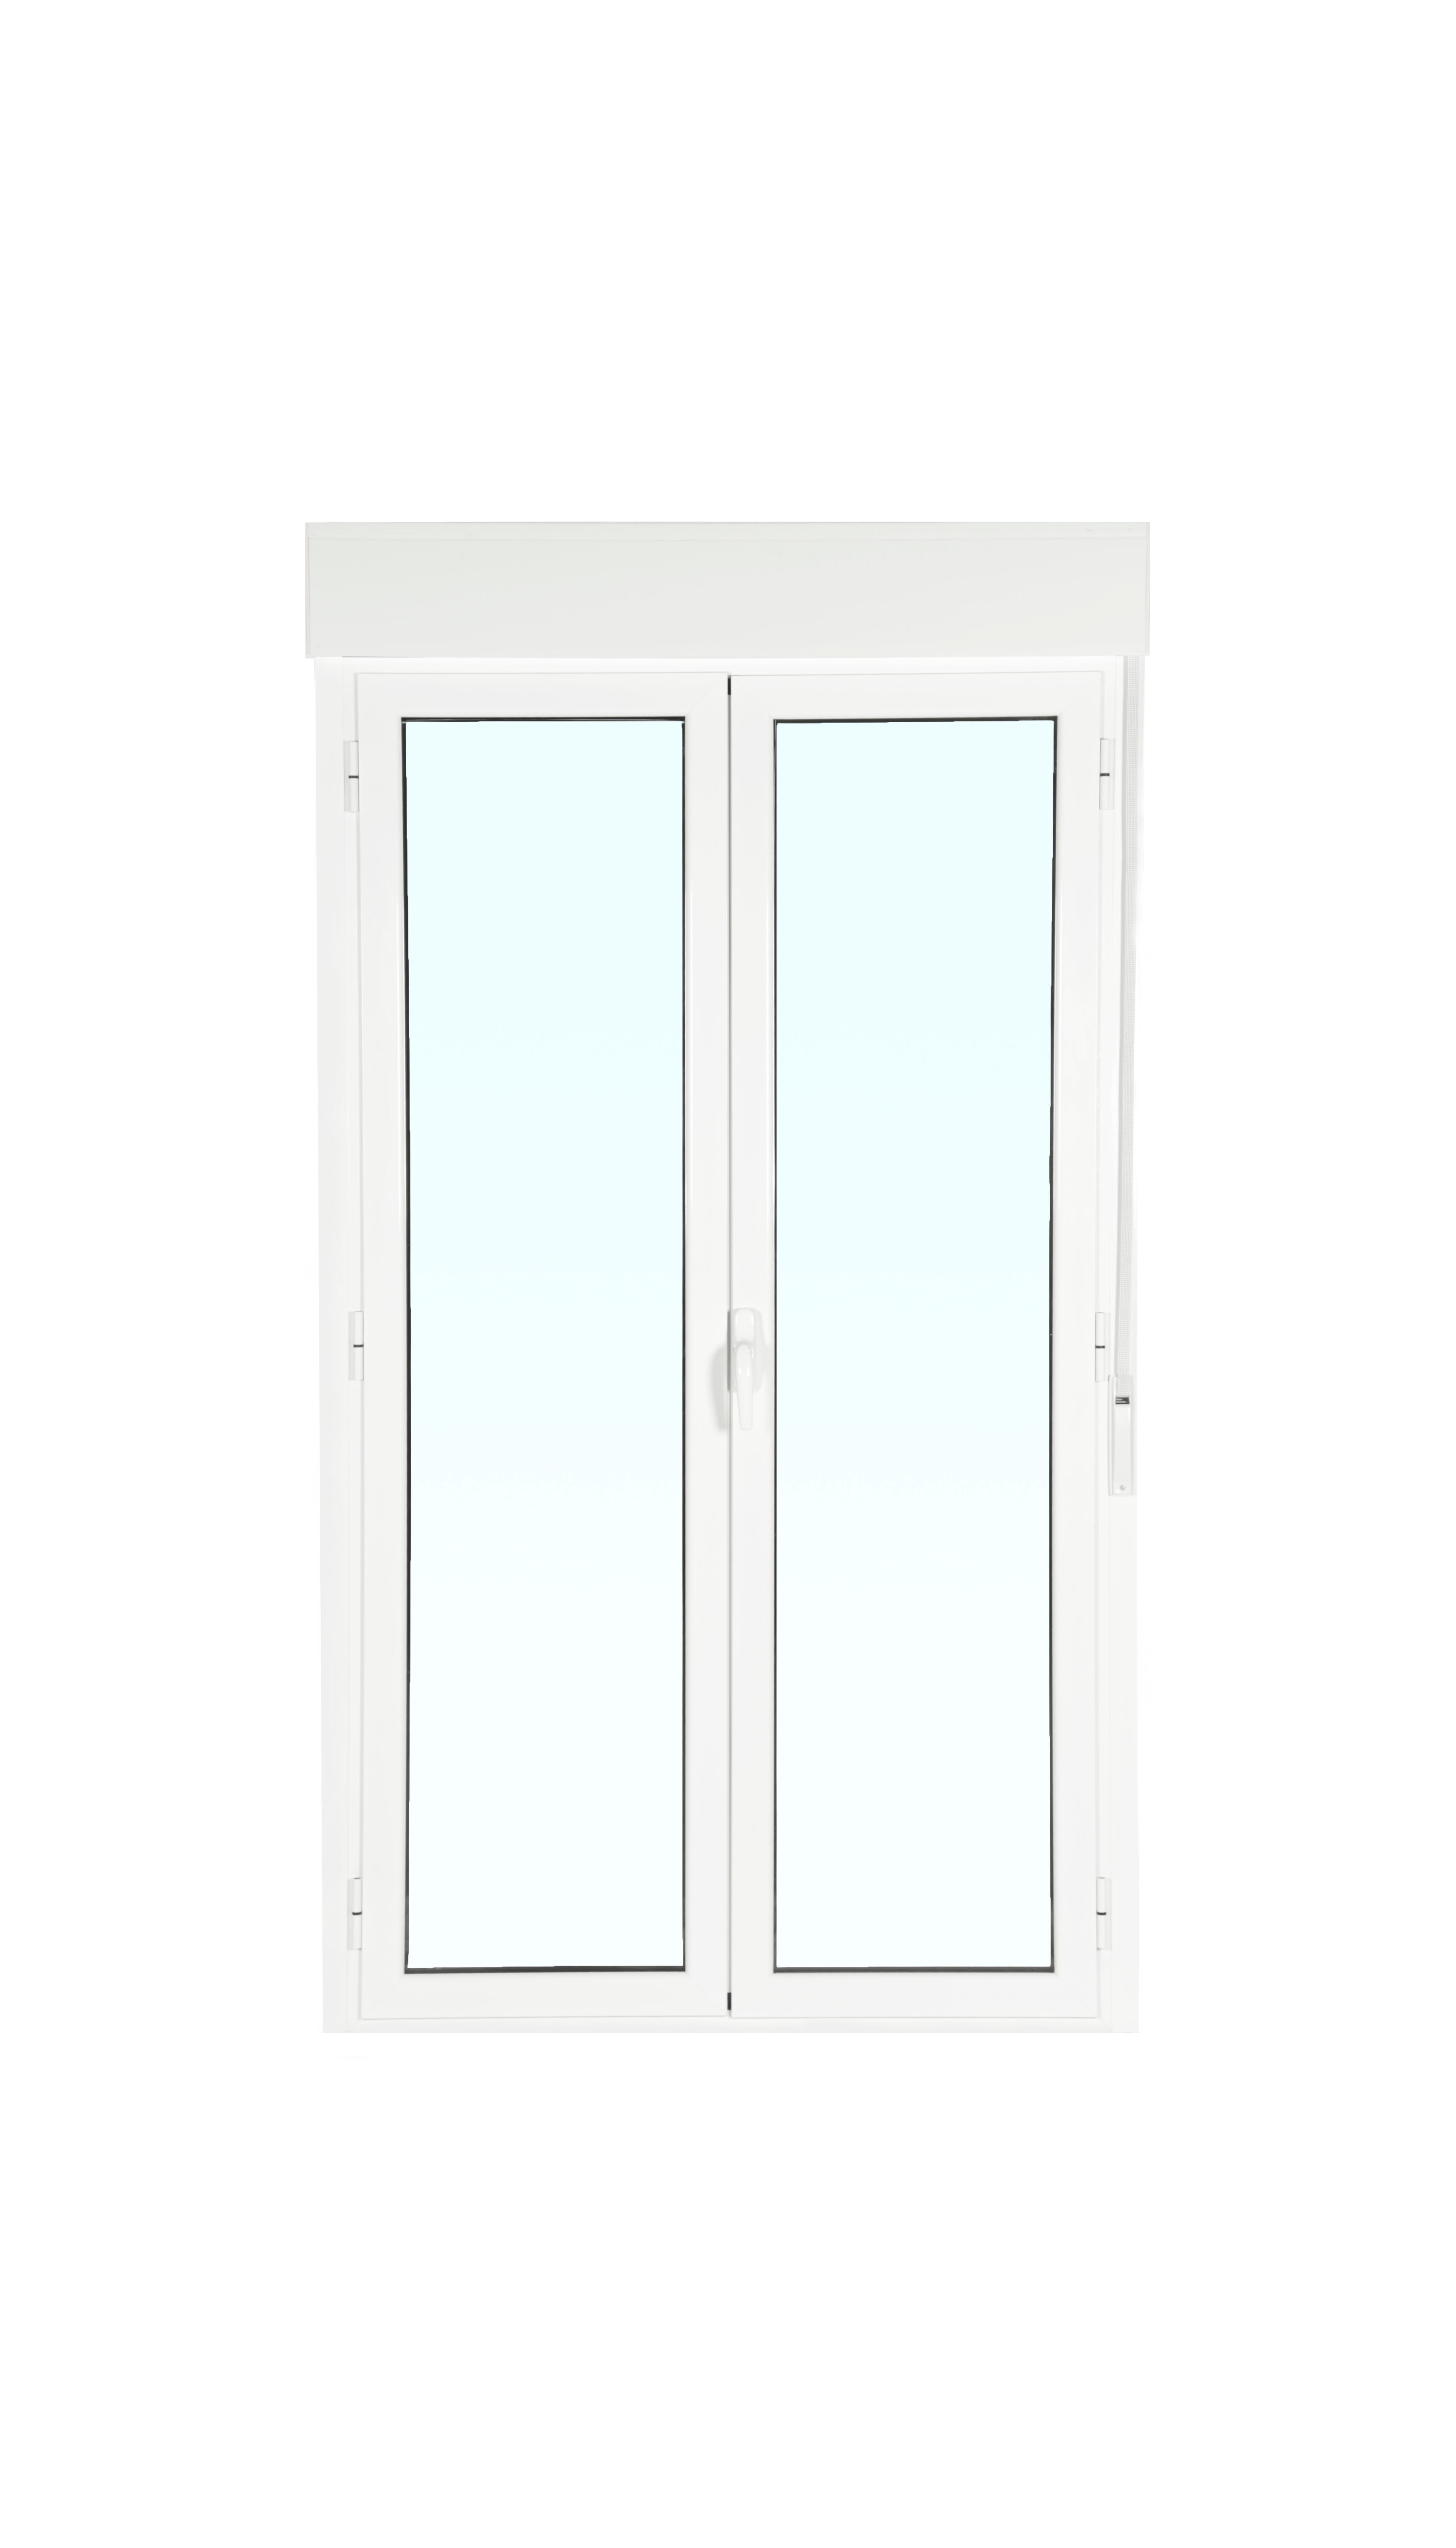 Balconera aluminio artens blanca practicable con persiana de 160x229cm